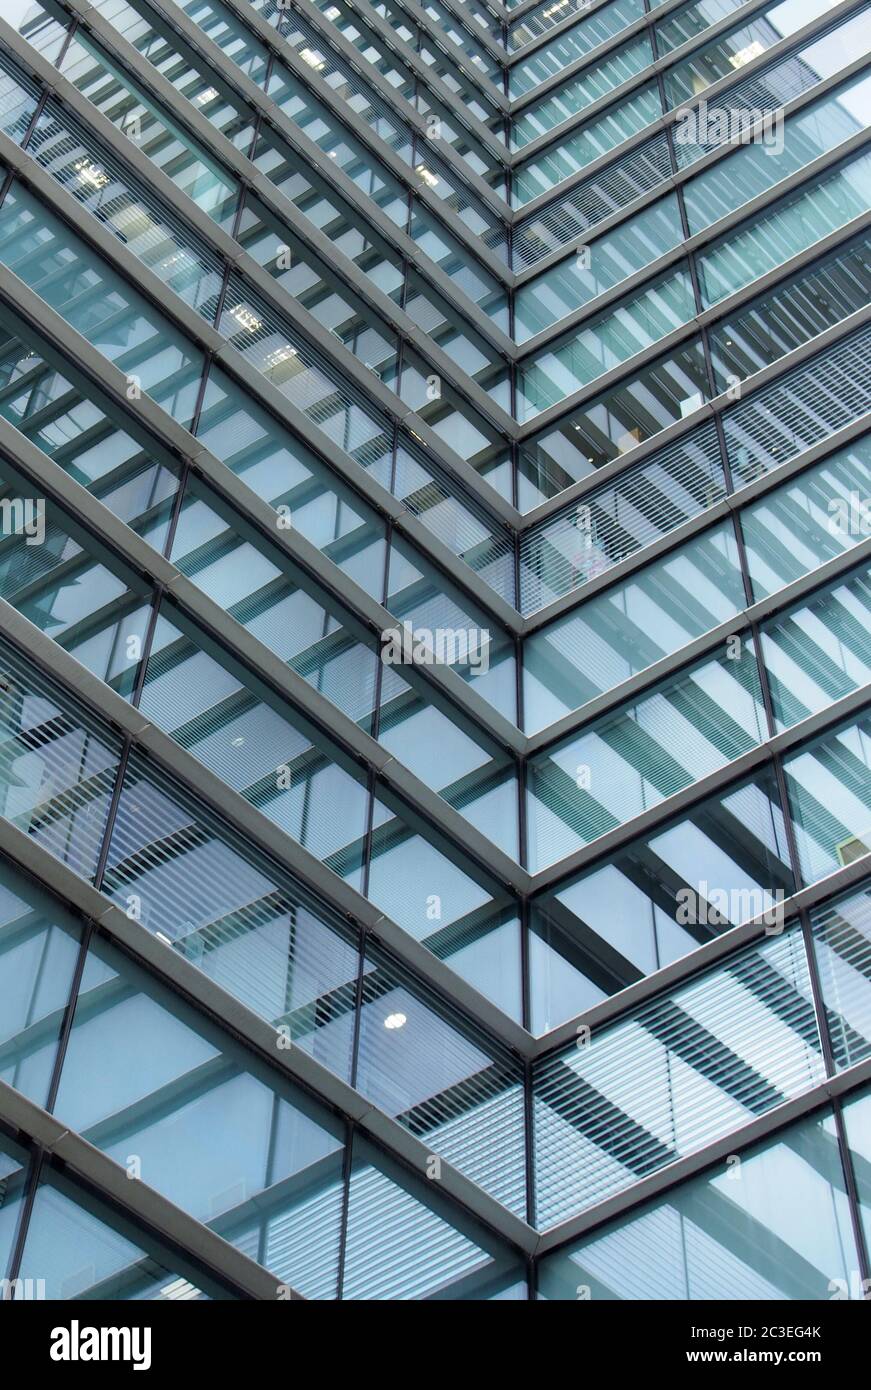 un cadre plein d'architecture moderne de bureau abstrait avec des formes géométriques angulaires reflétées et des lignes dans des fenêtres en verre bleu Banque D'Images